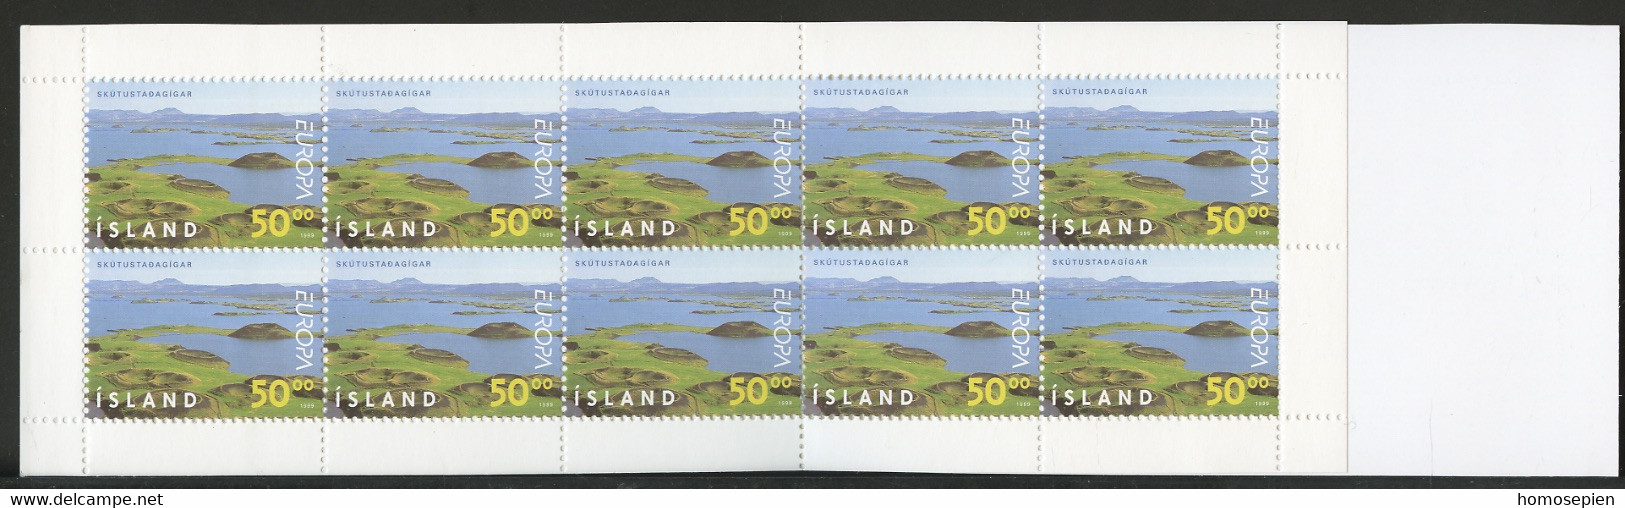 Islande - Island - Iceland Carnet 1999 Y&T N°C866 - Michel N°MH913 *** - 50k EUROPA - Carnets